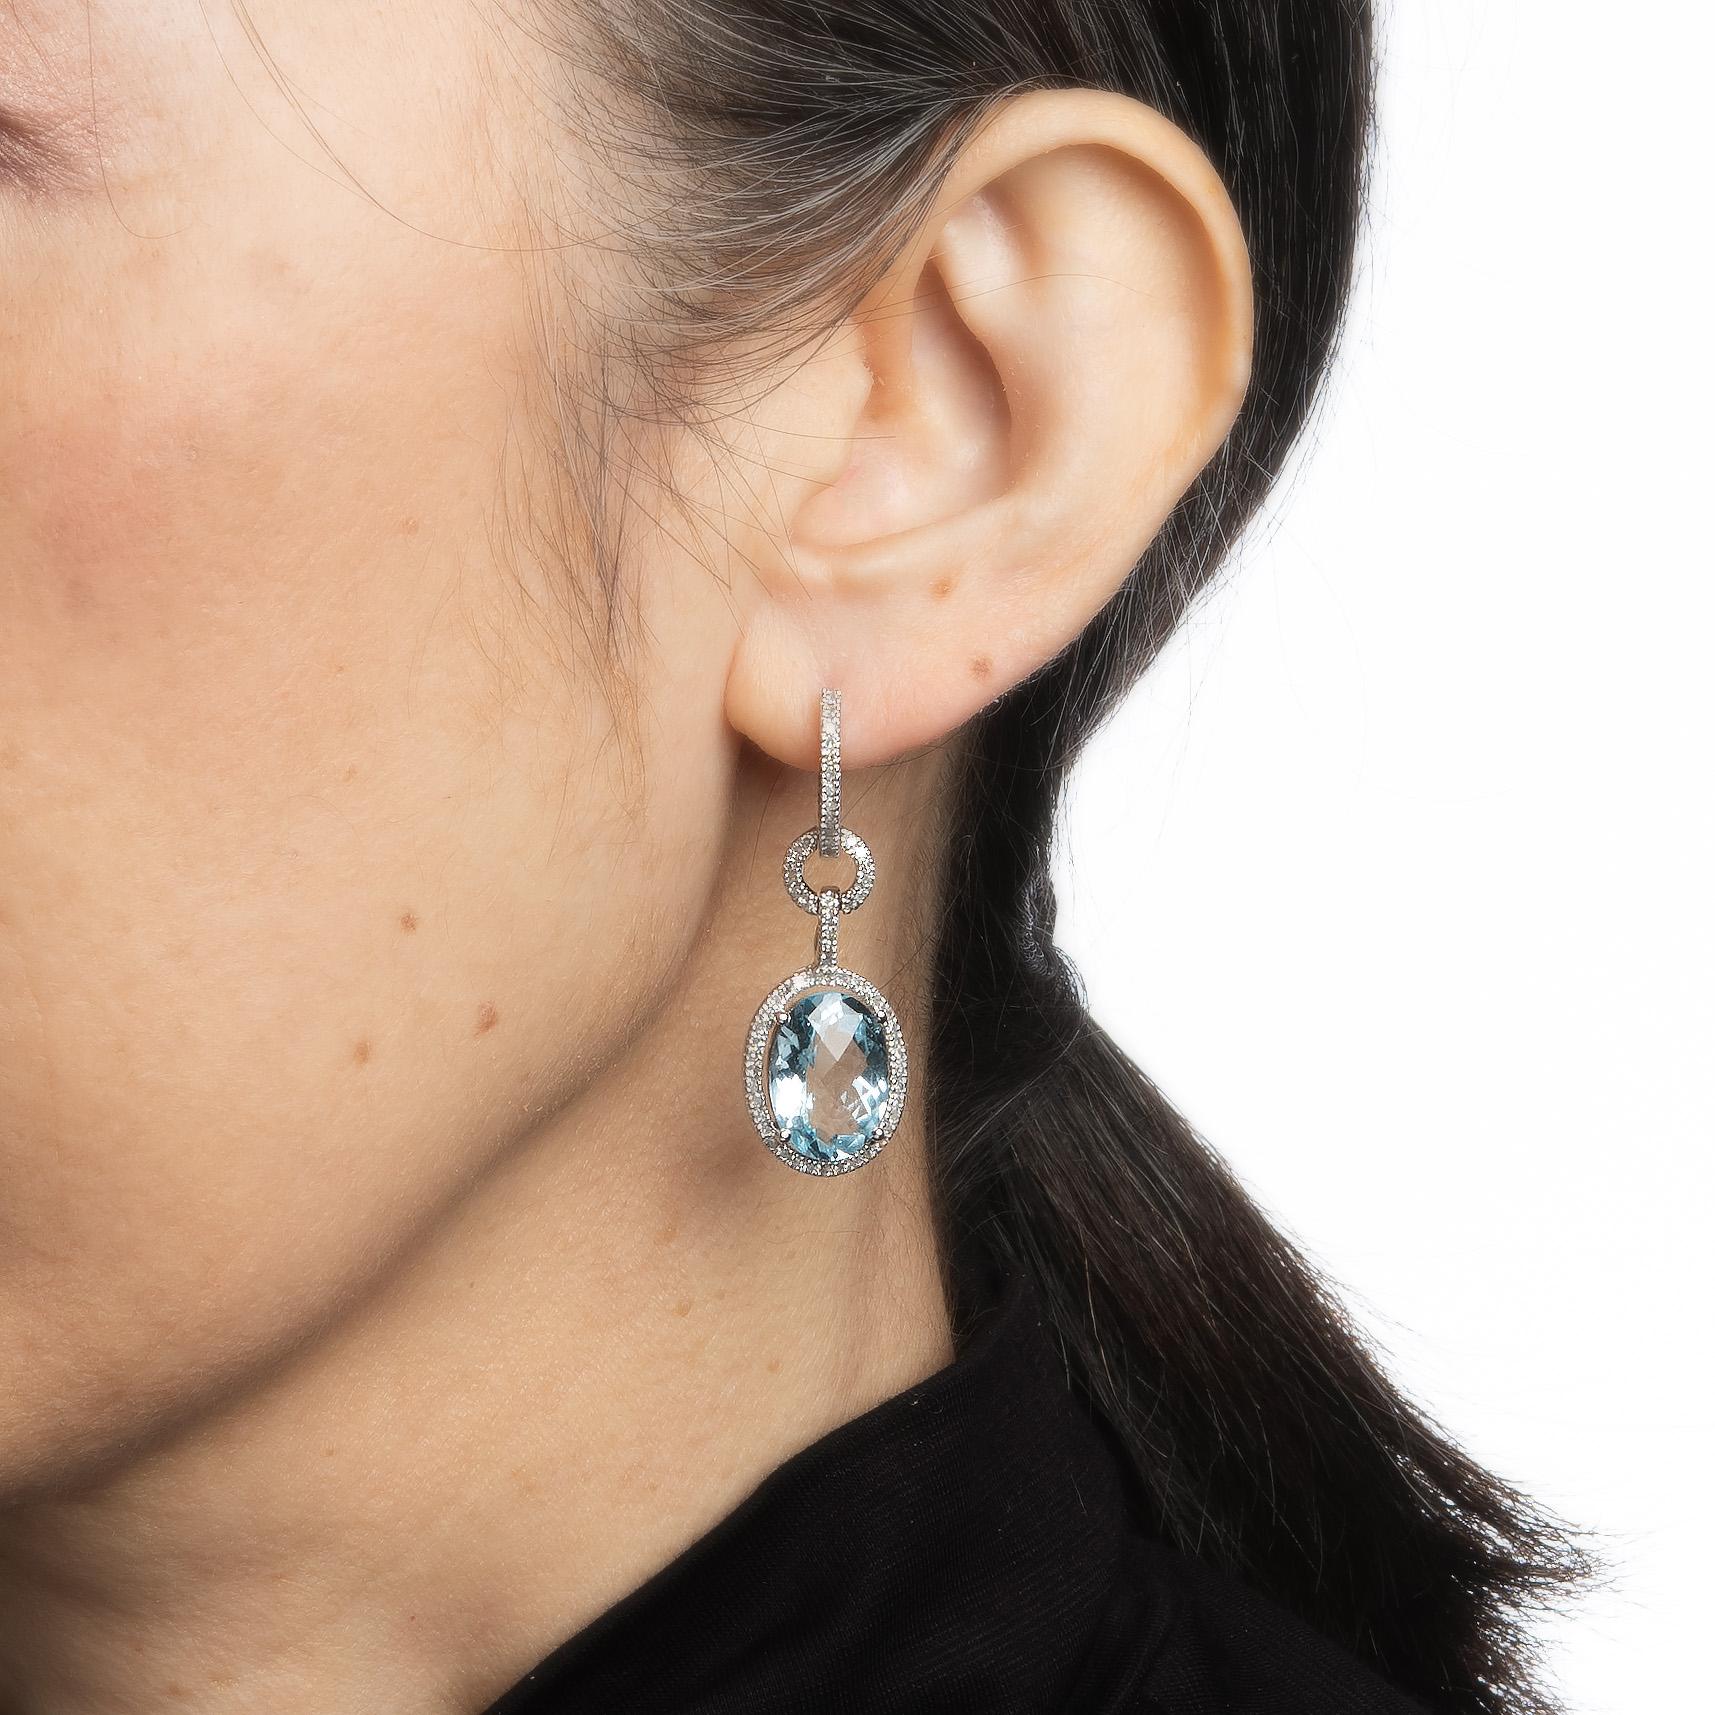 Modern Blue Topaz Diamond Earrings Oval Drops Estate Fine Jewelry Vintage